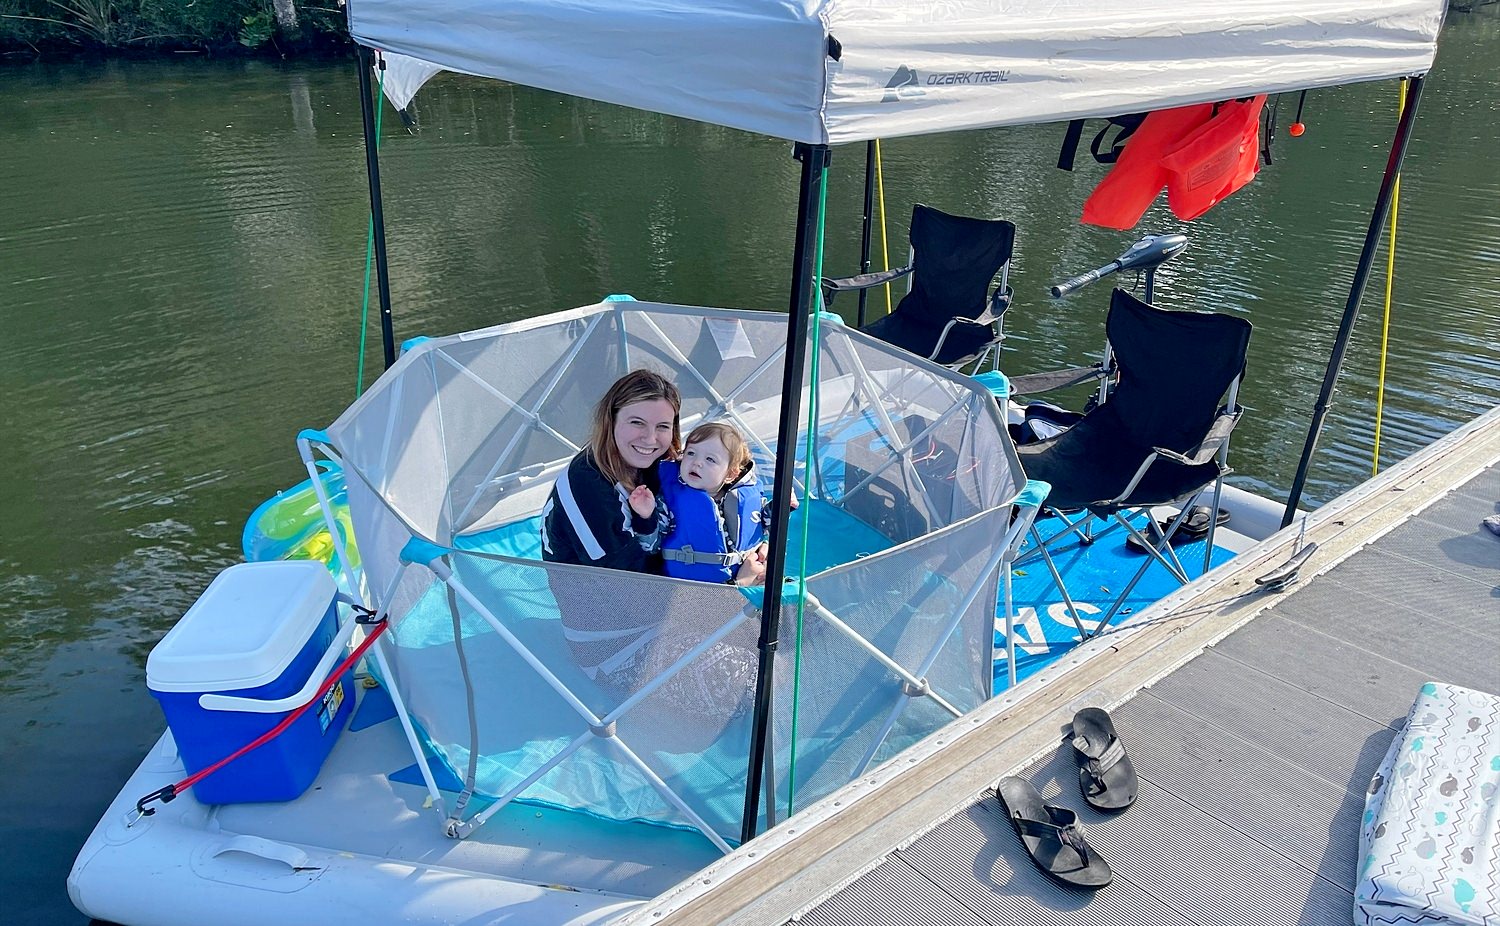  YokIma Inflatable Dock Platform, Fishing Floating